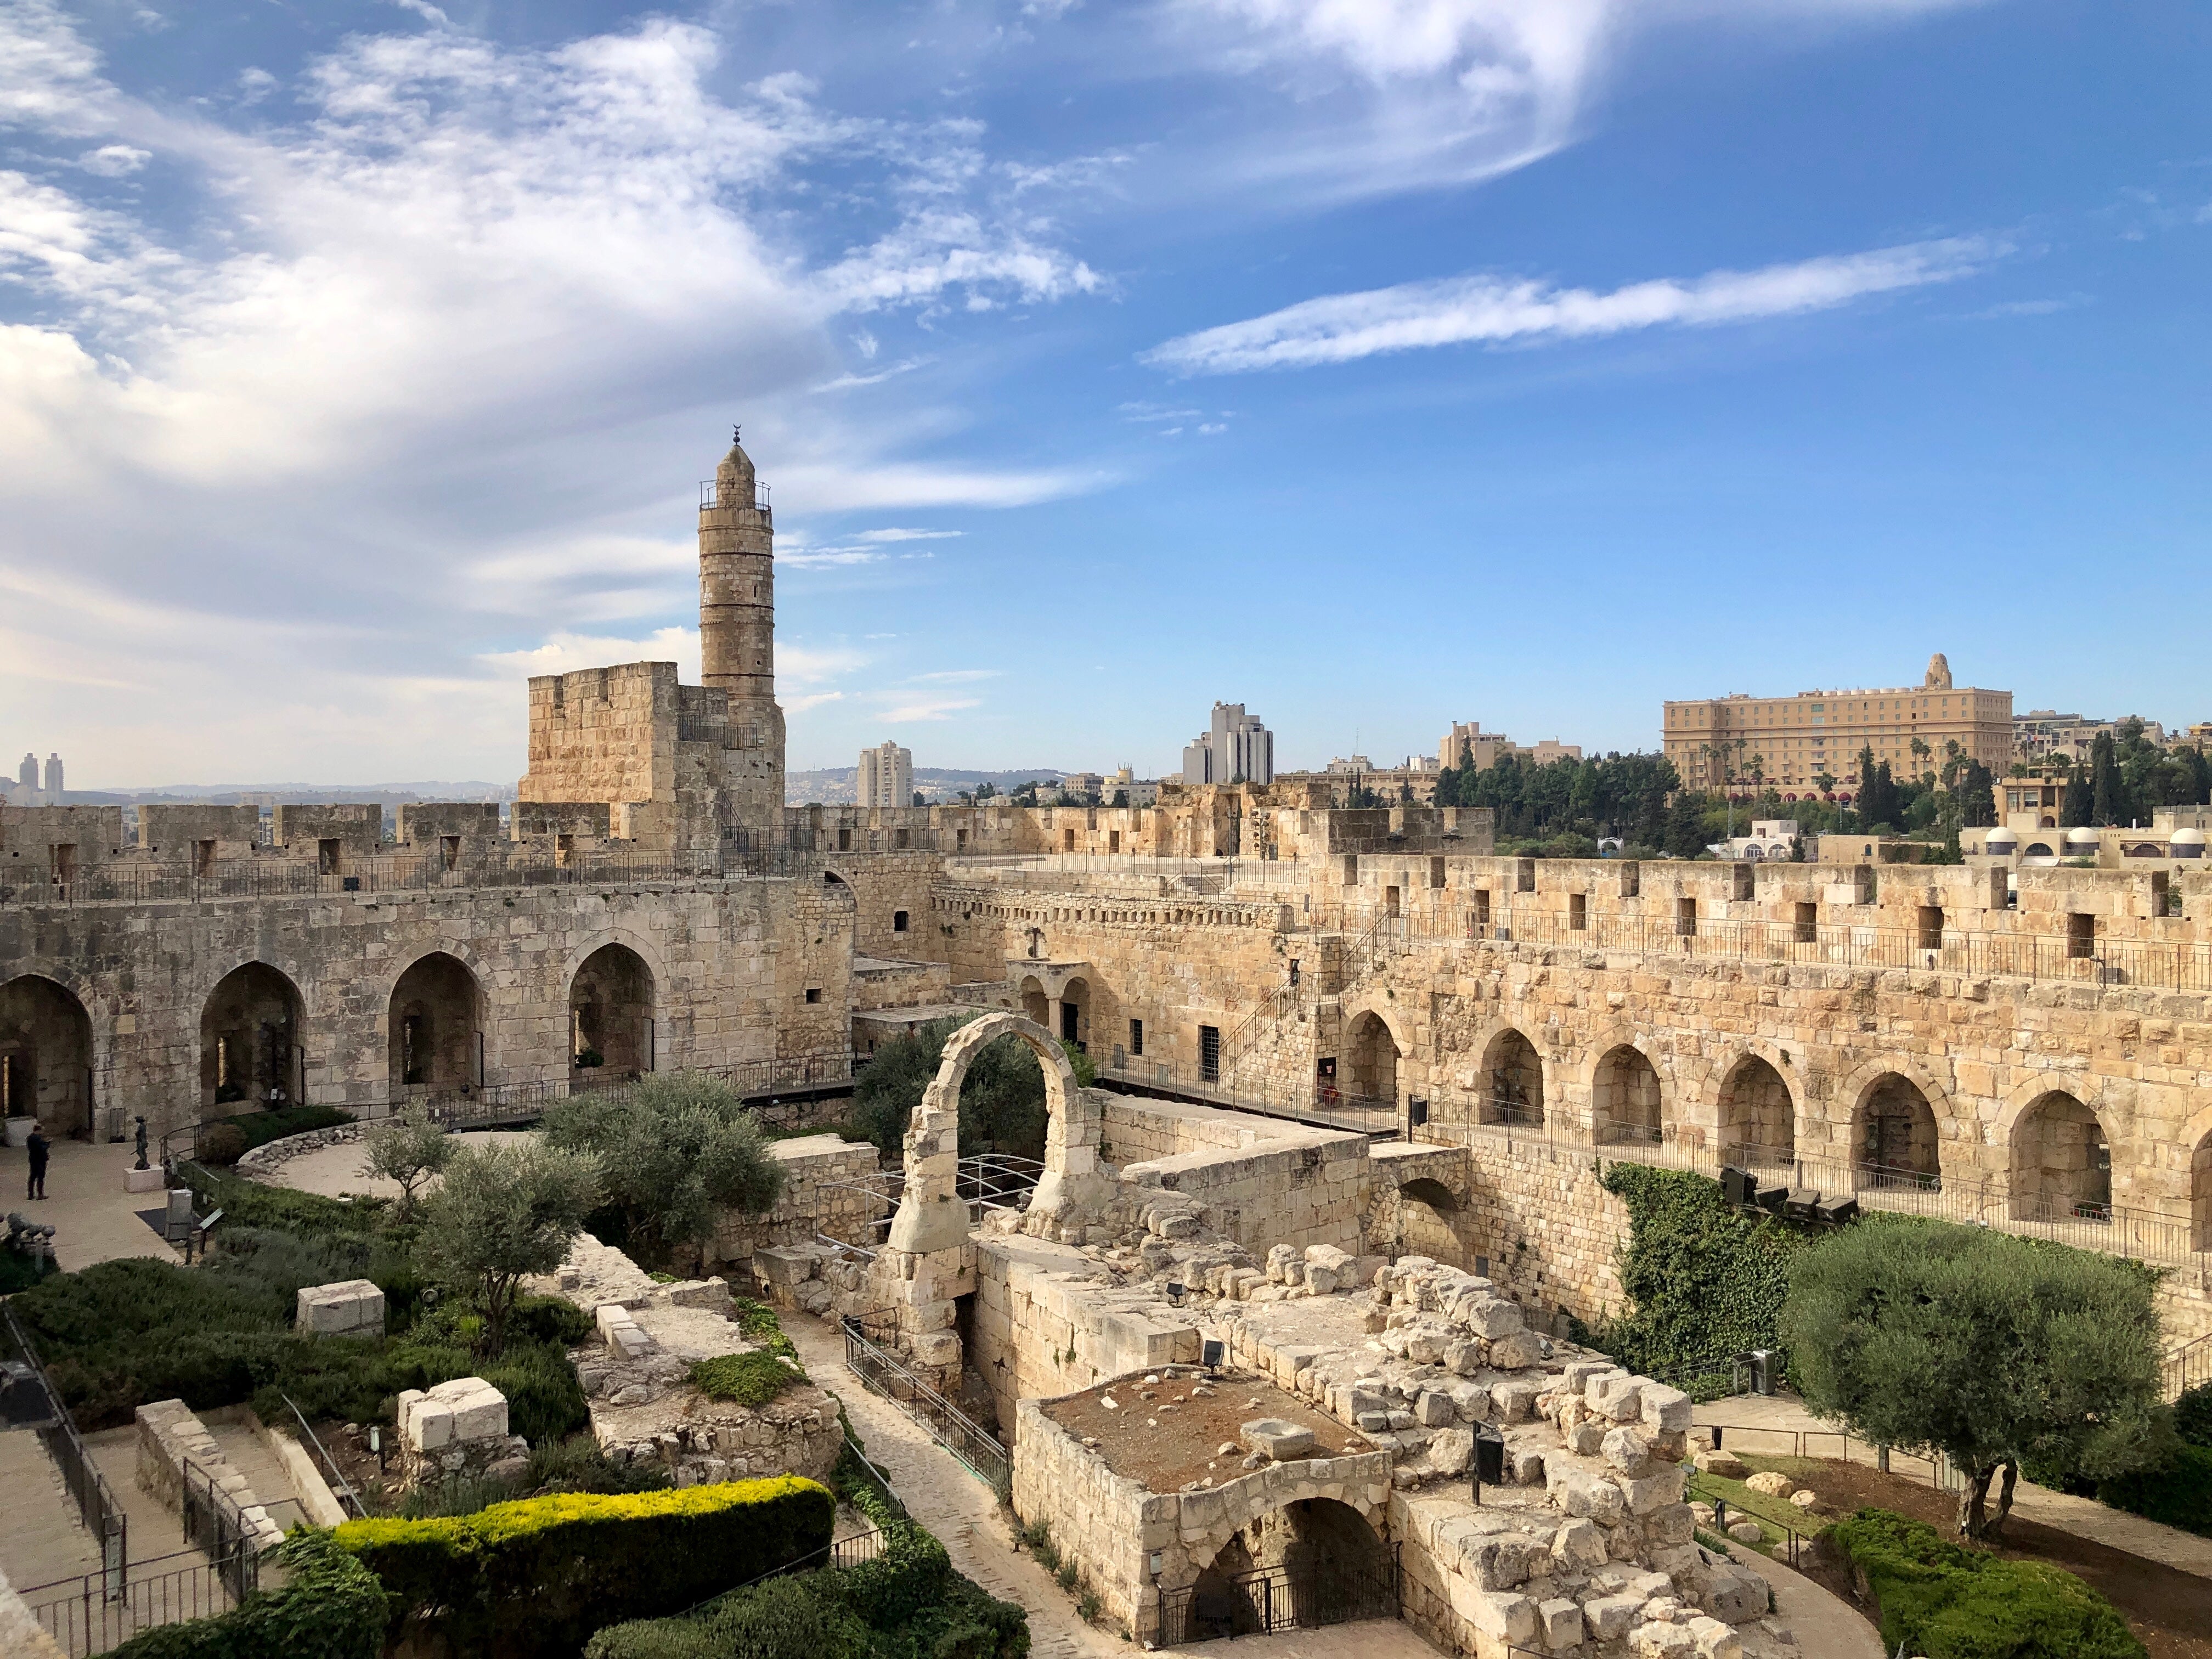 Jerusalem’s ancient city walls